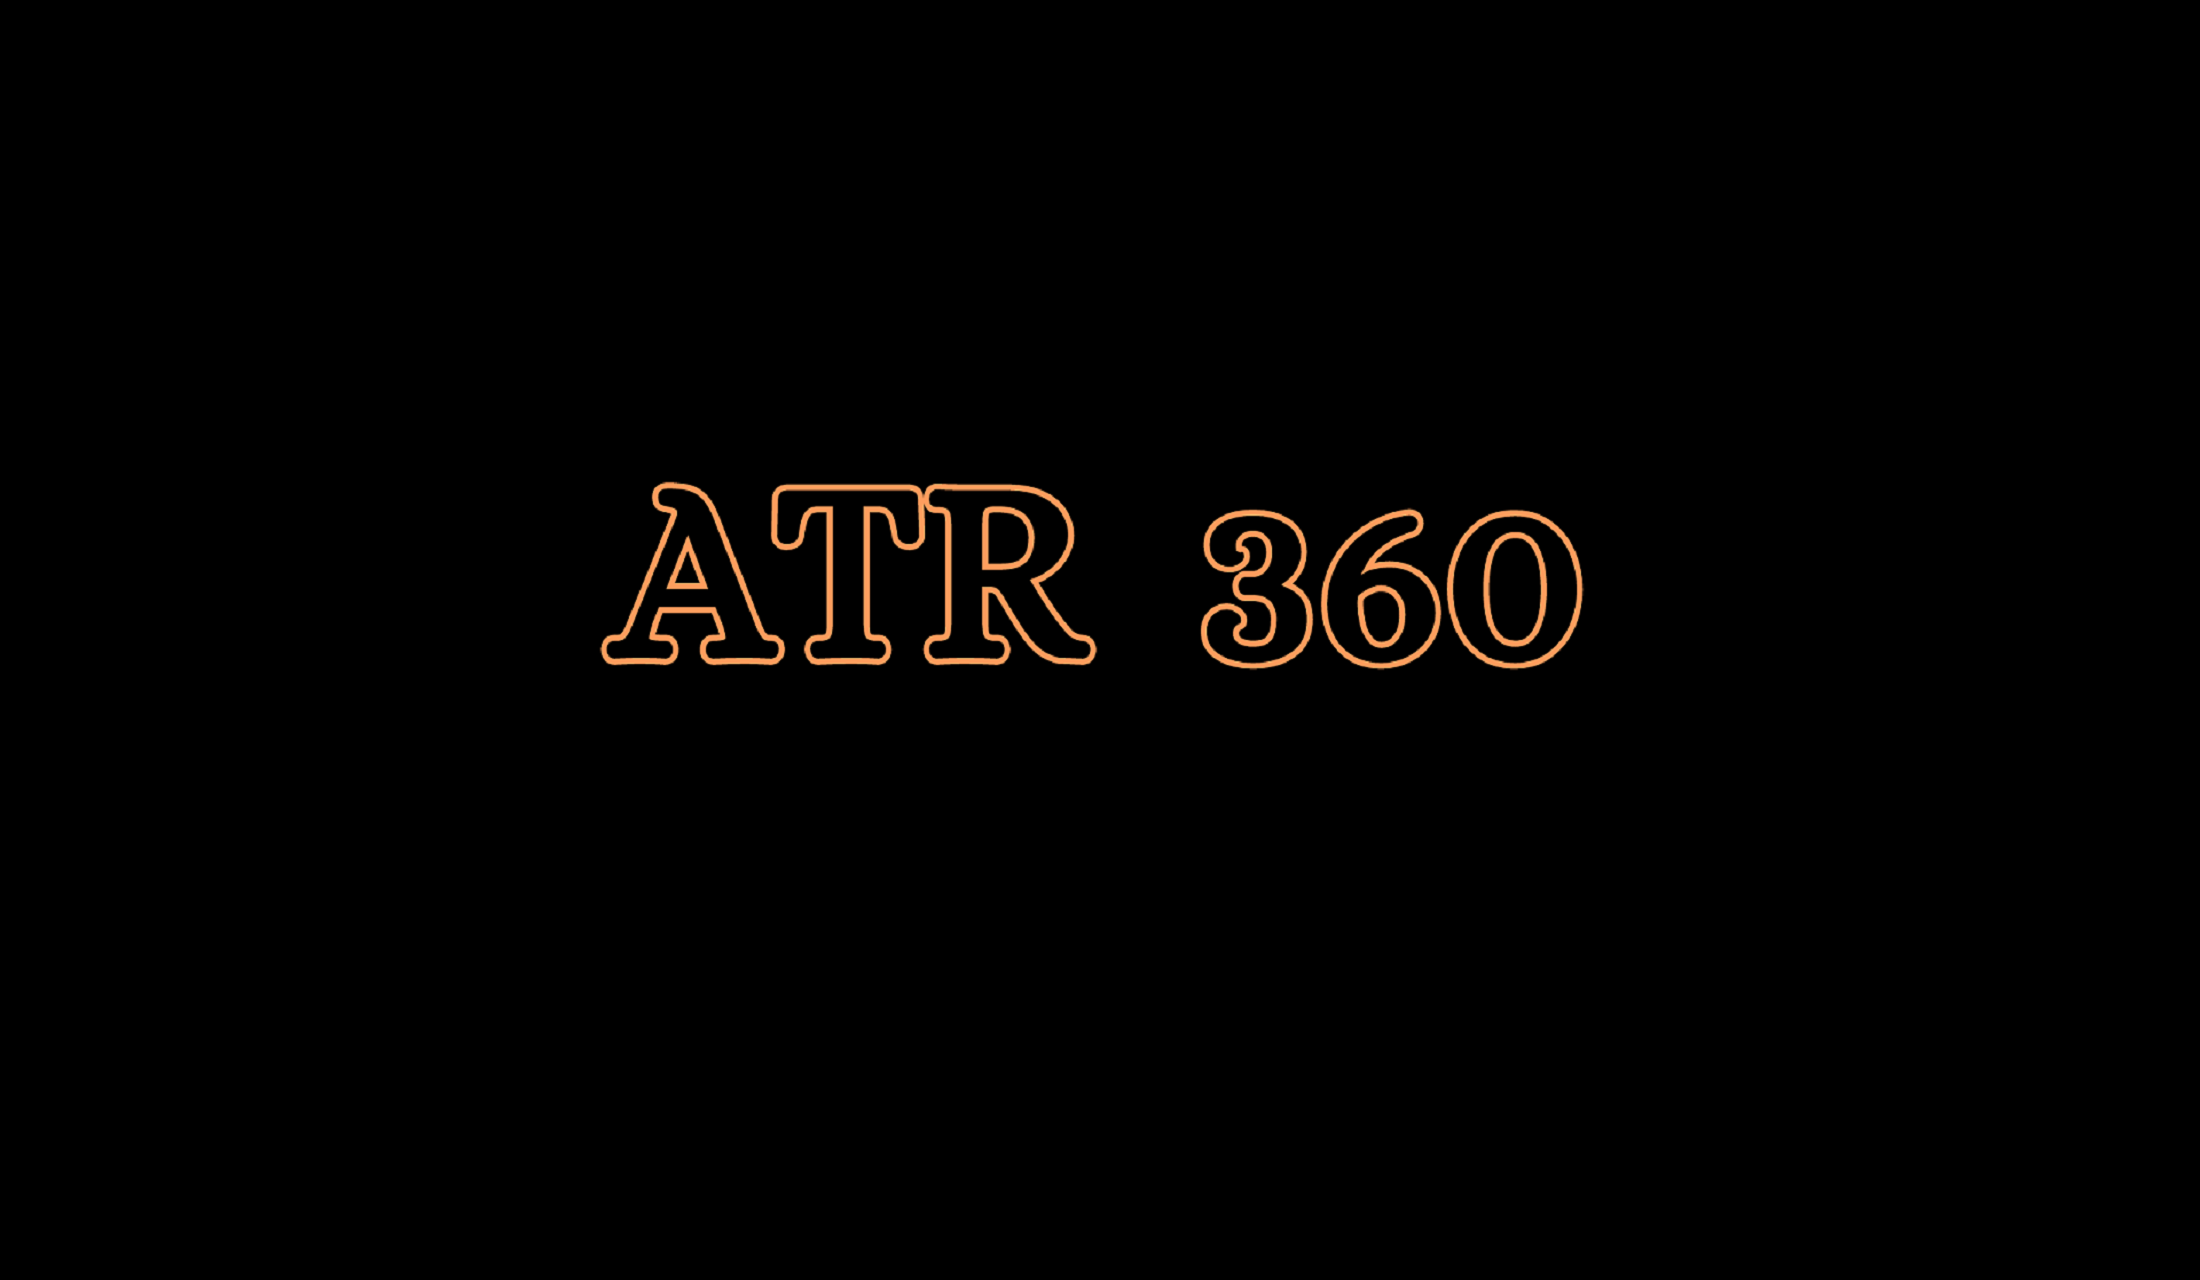 ATR 360